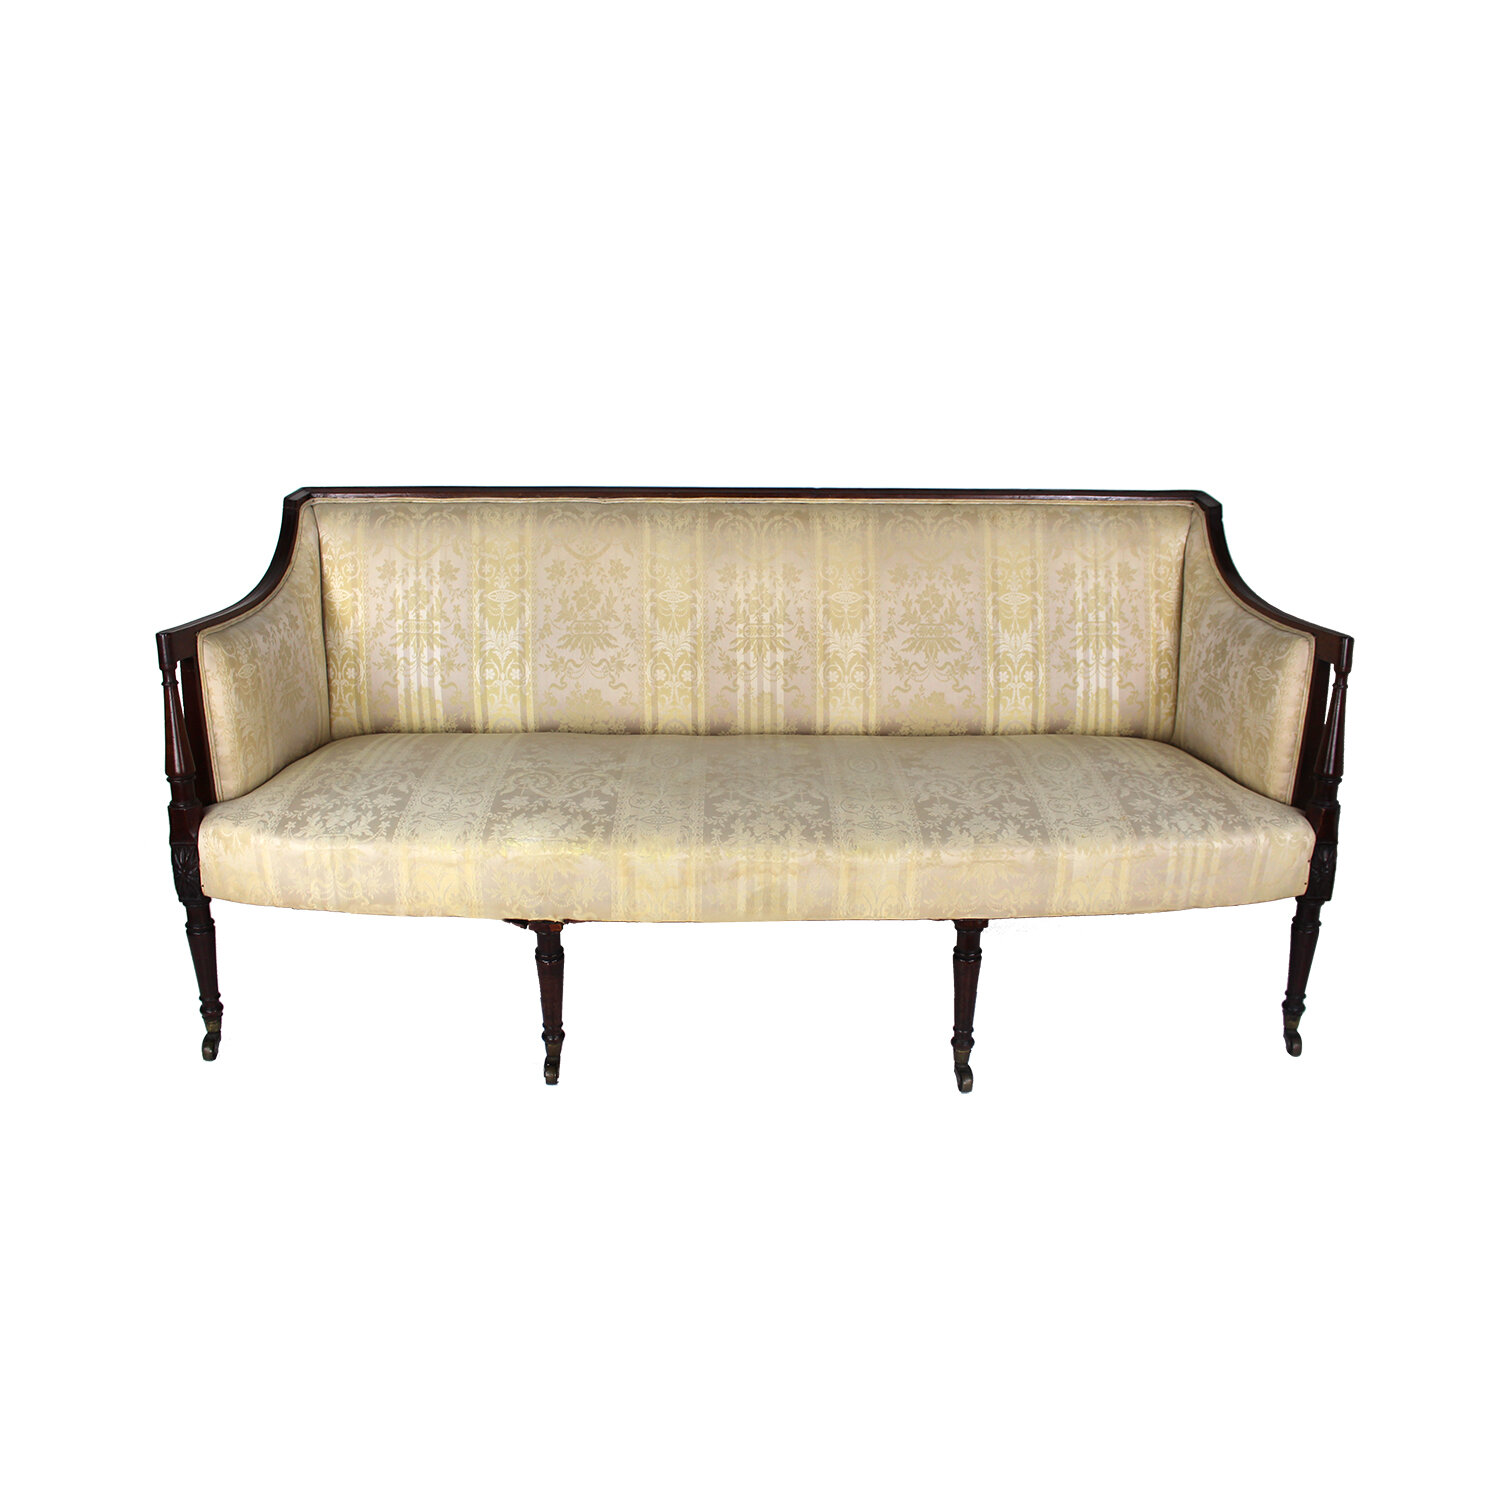 George III English Three-Seater Sofa Settee, Circa 1810.  